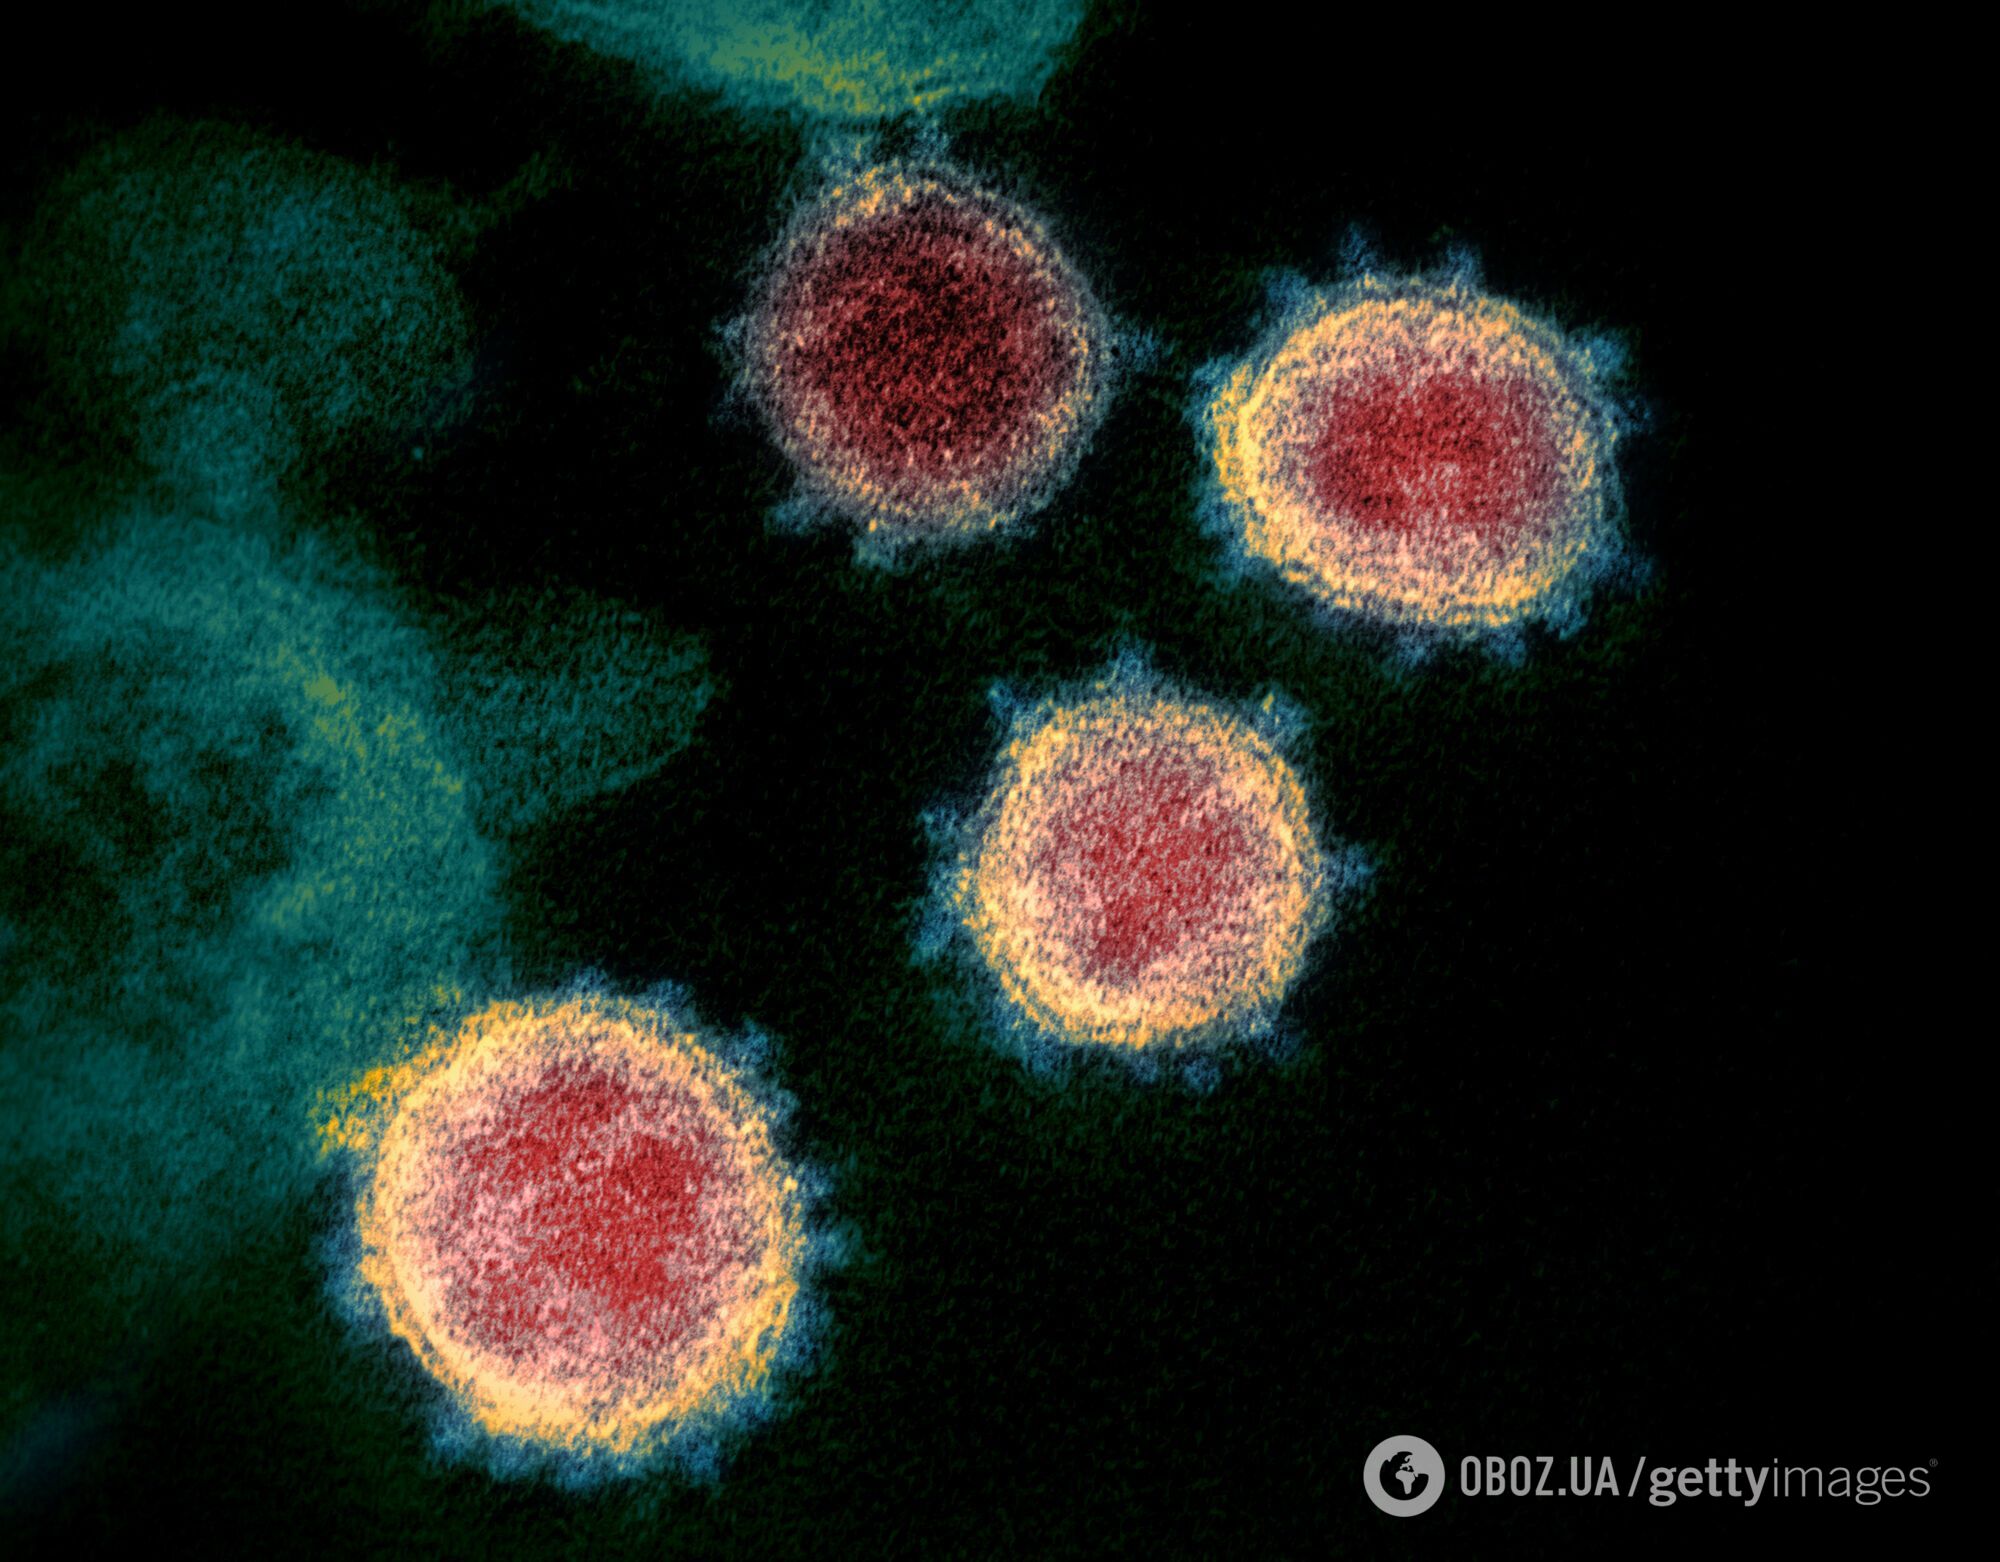 "Теоретично коронавірус може зникнути сам по собі".